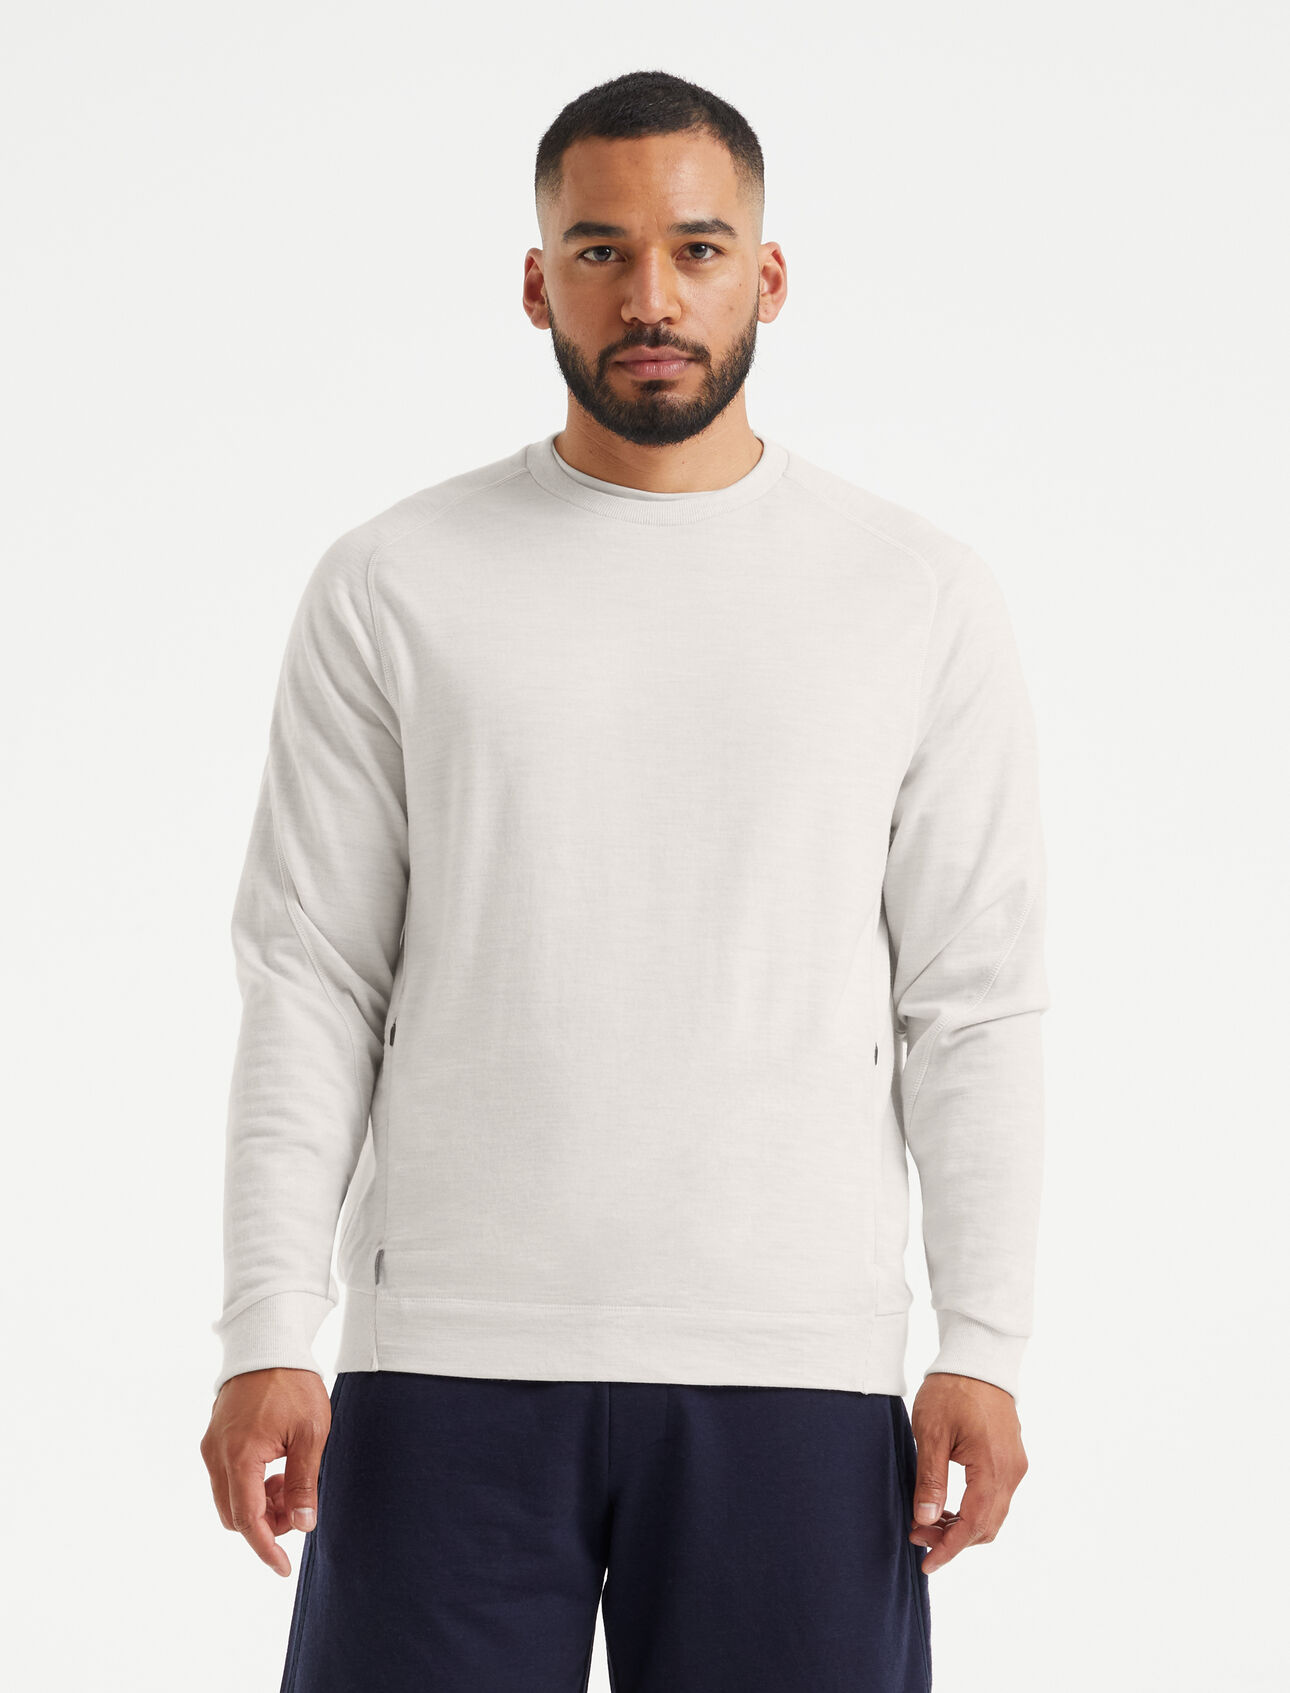 Mens Merino Sweatshirt A classic crew-neck sweatshirt made with 100% merino wool Terry fabric, the Merino Sweatshirt maximizes comfort with refined modern details.